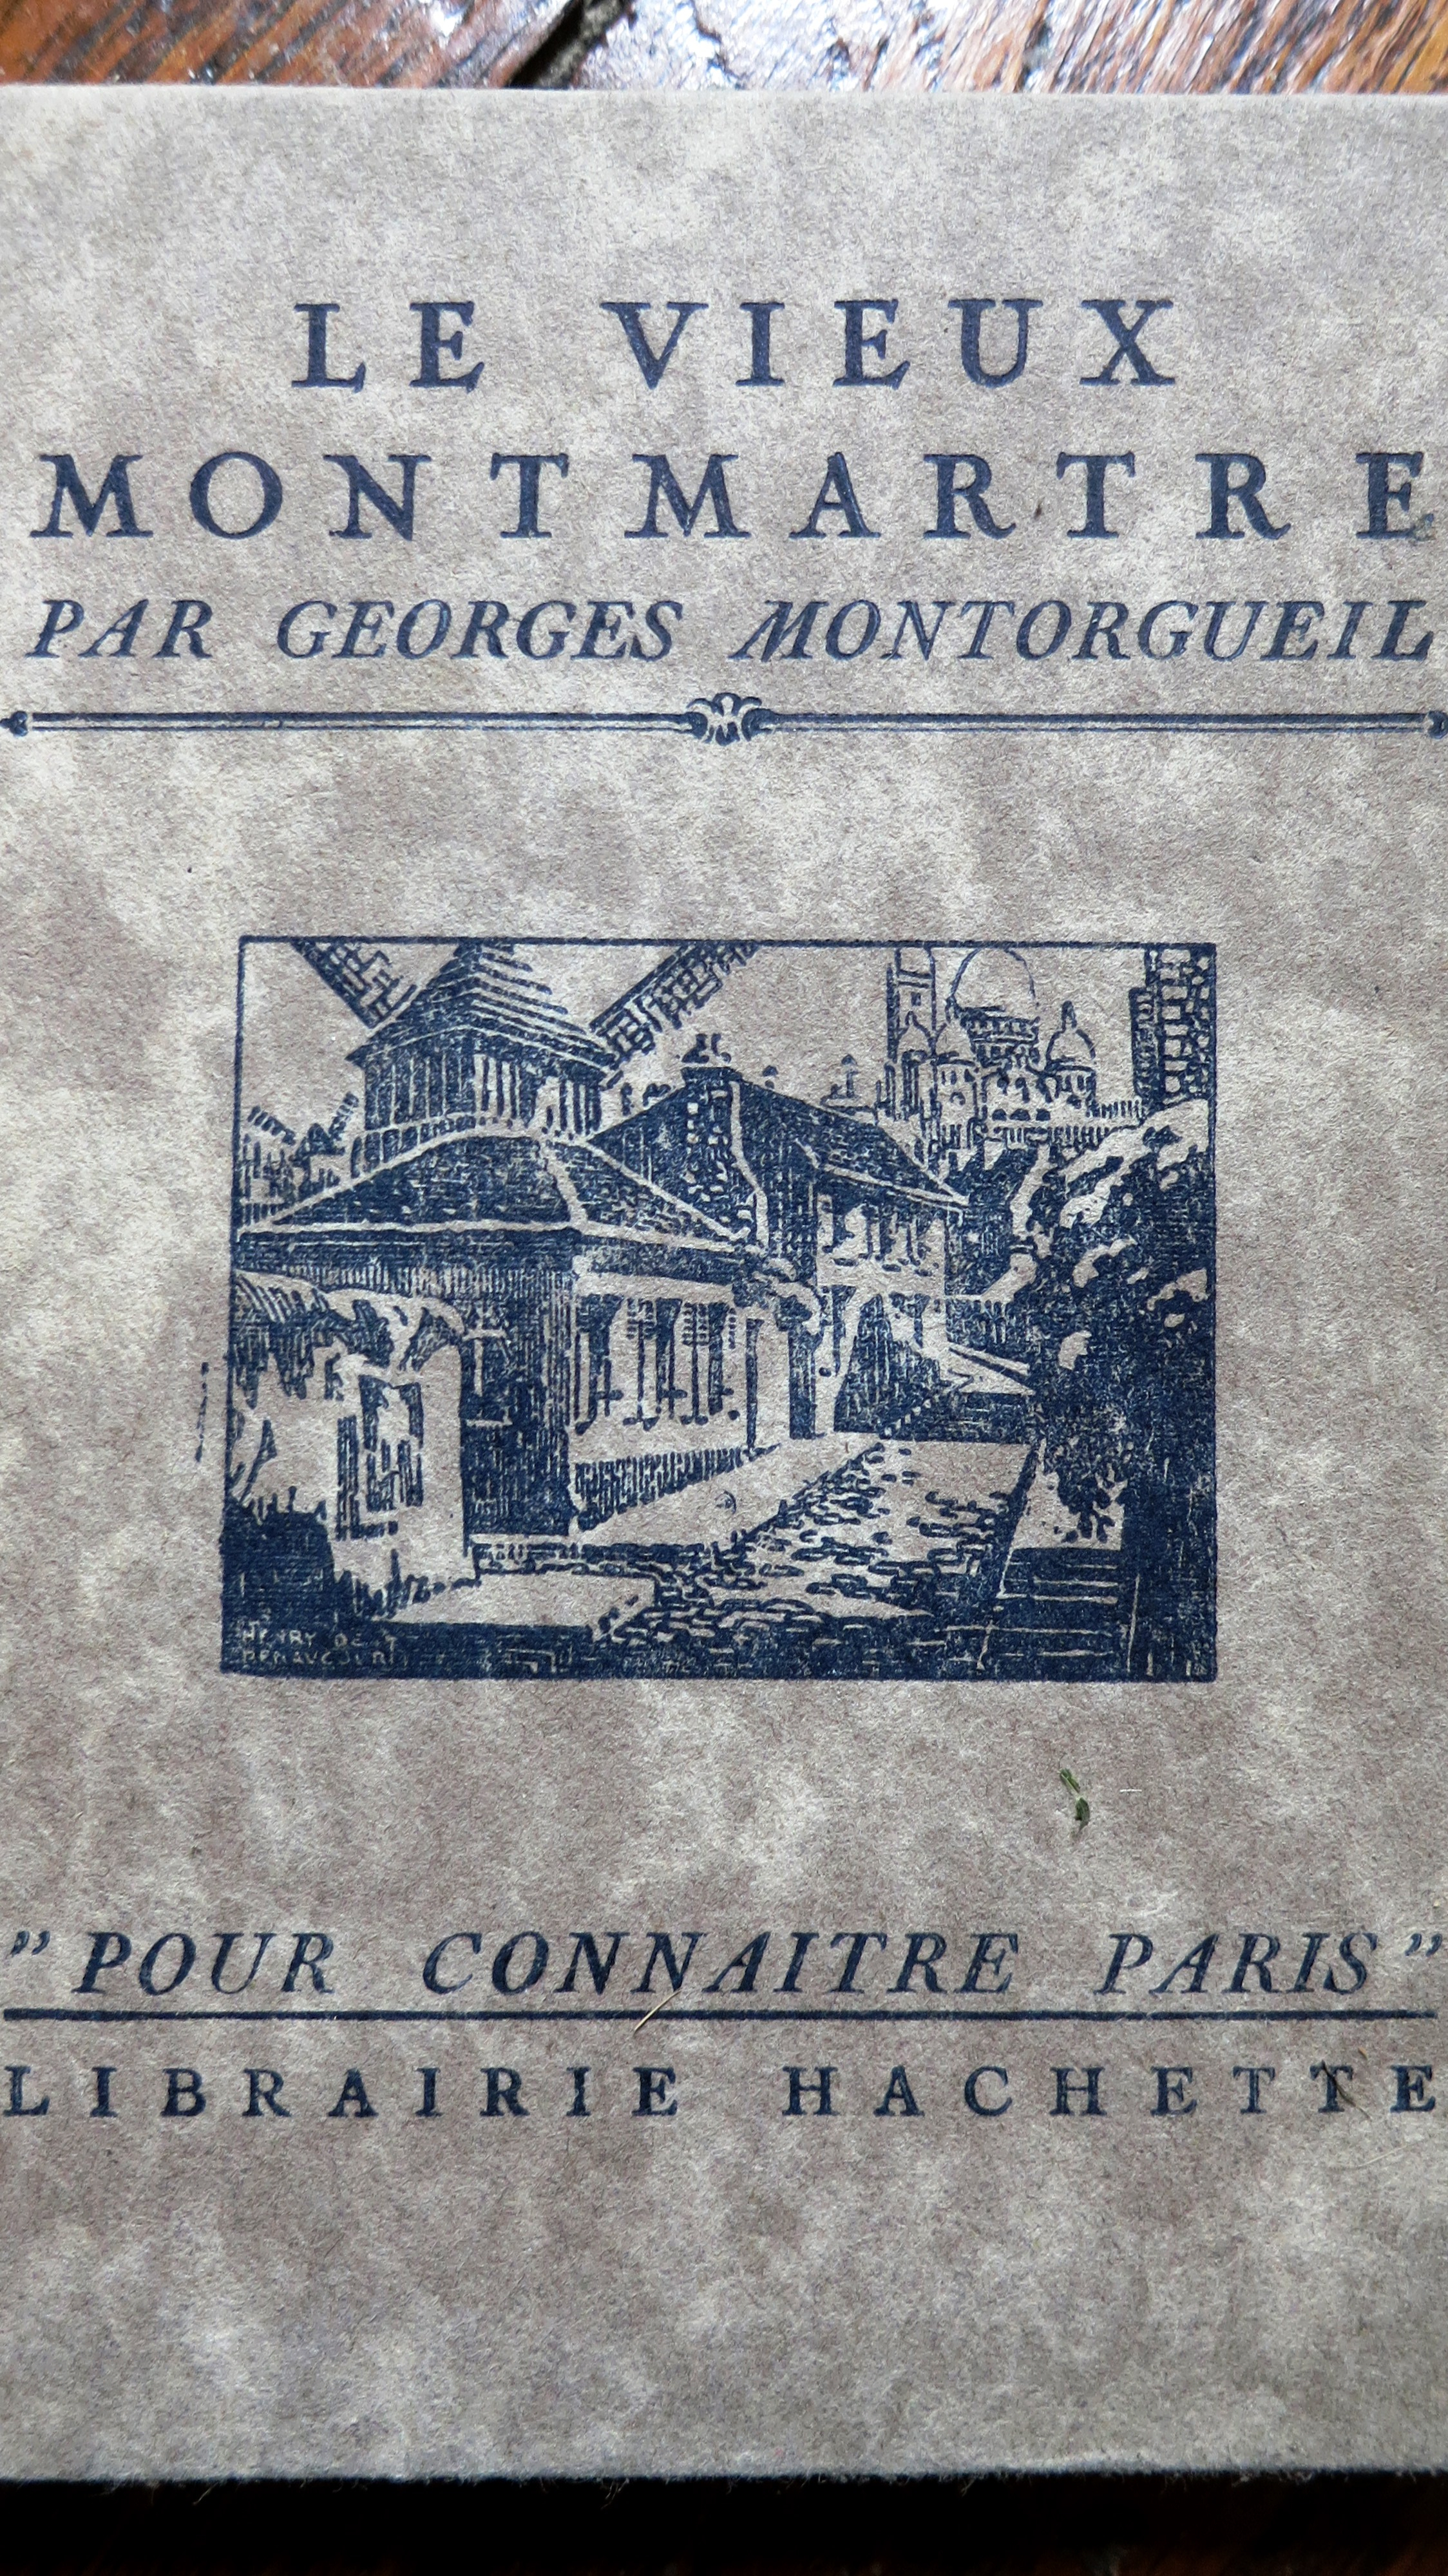 Le vieux Montmartre